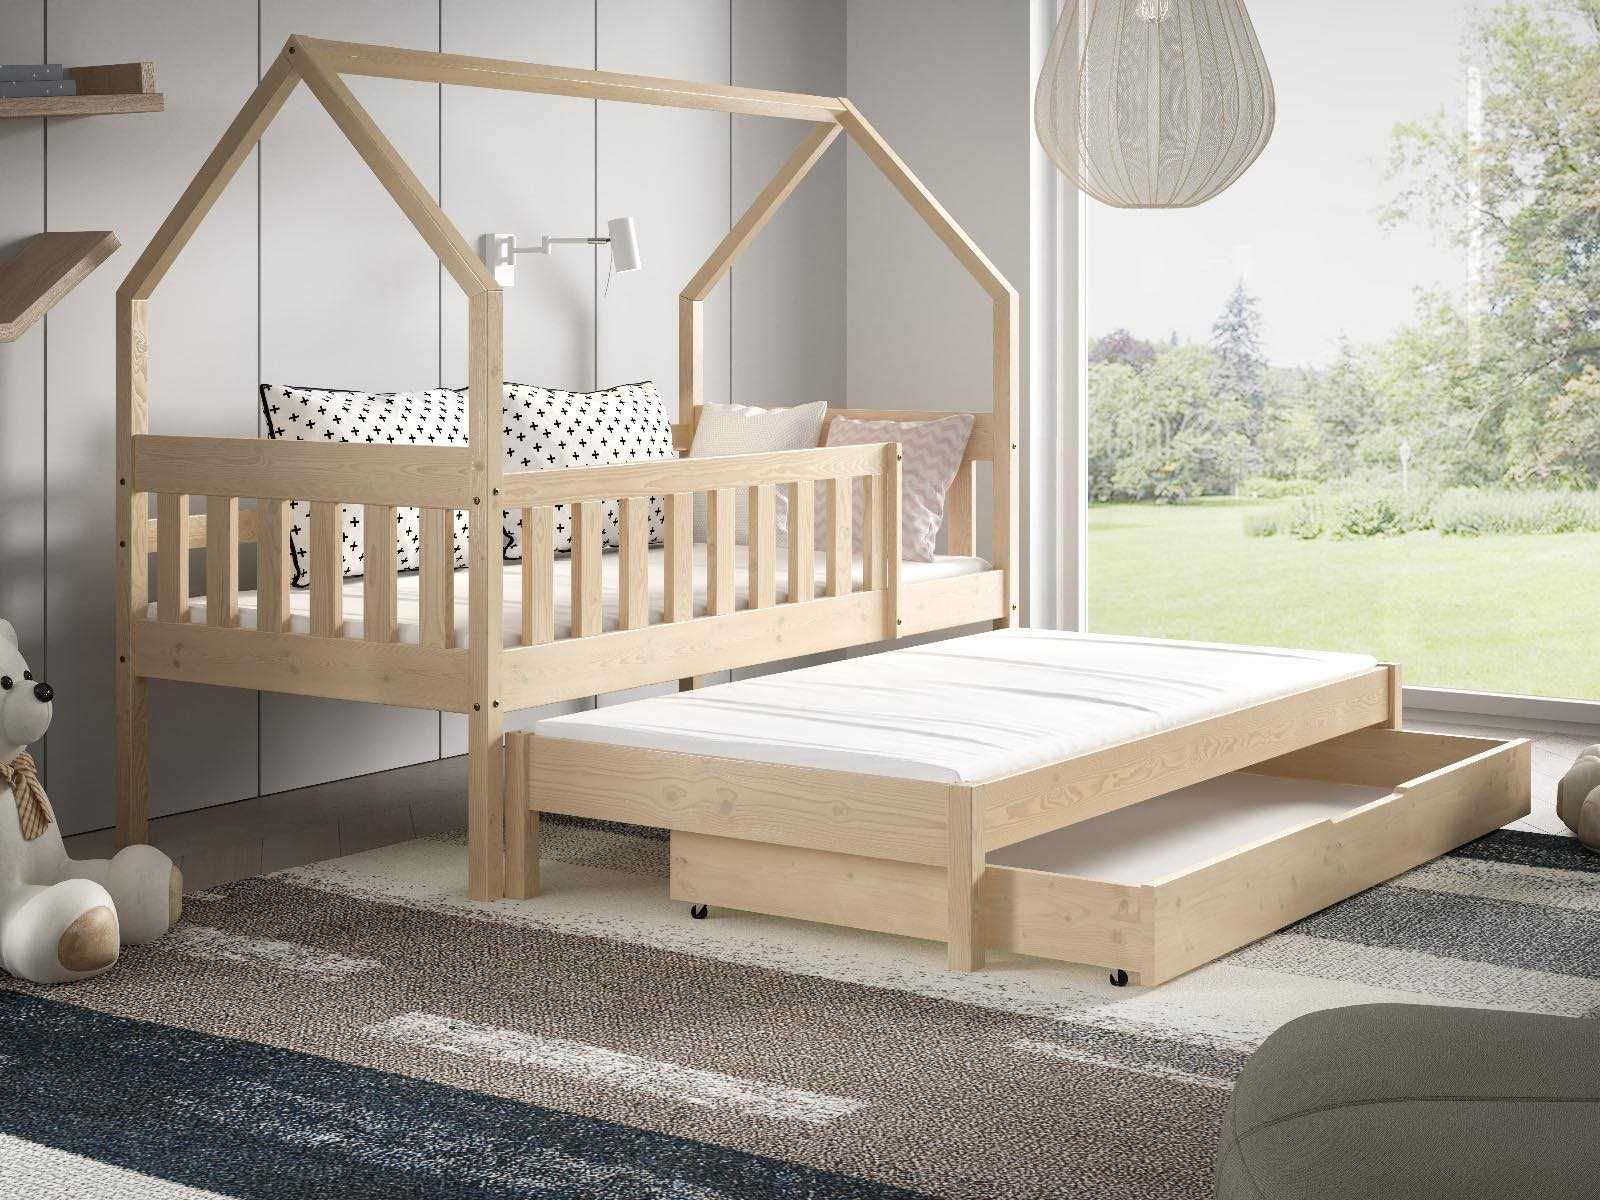 Łóżko dla 2 dzieci DOMEK LUNA 160x80 - materace GRATIS